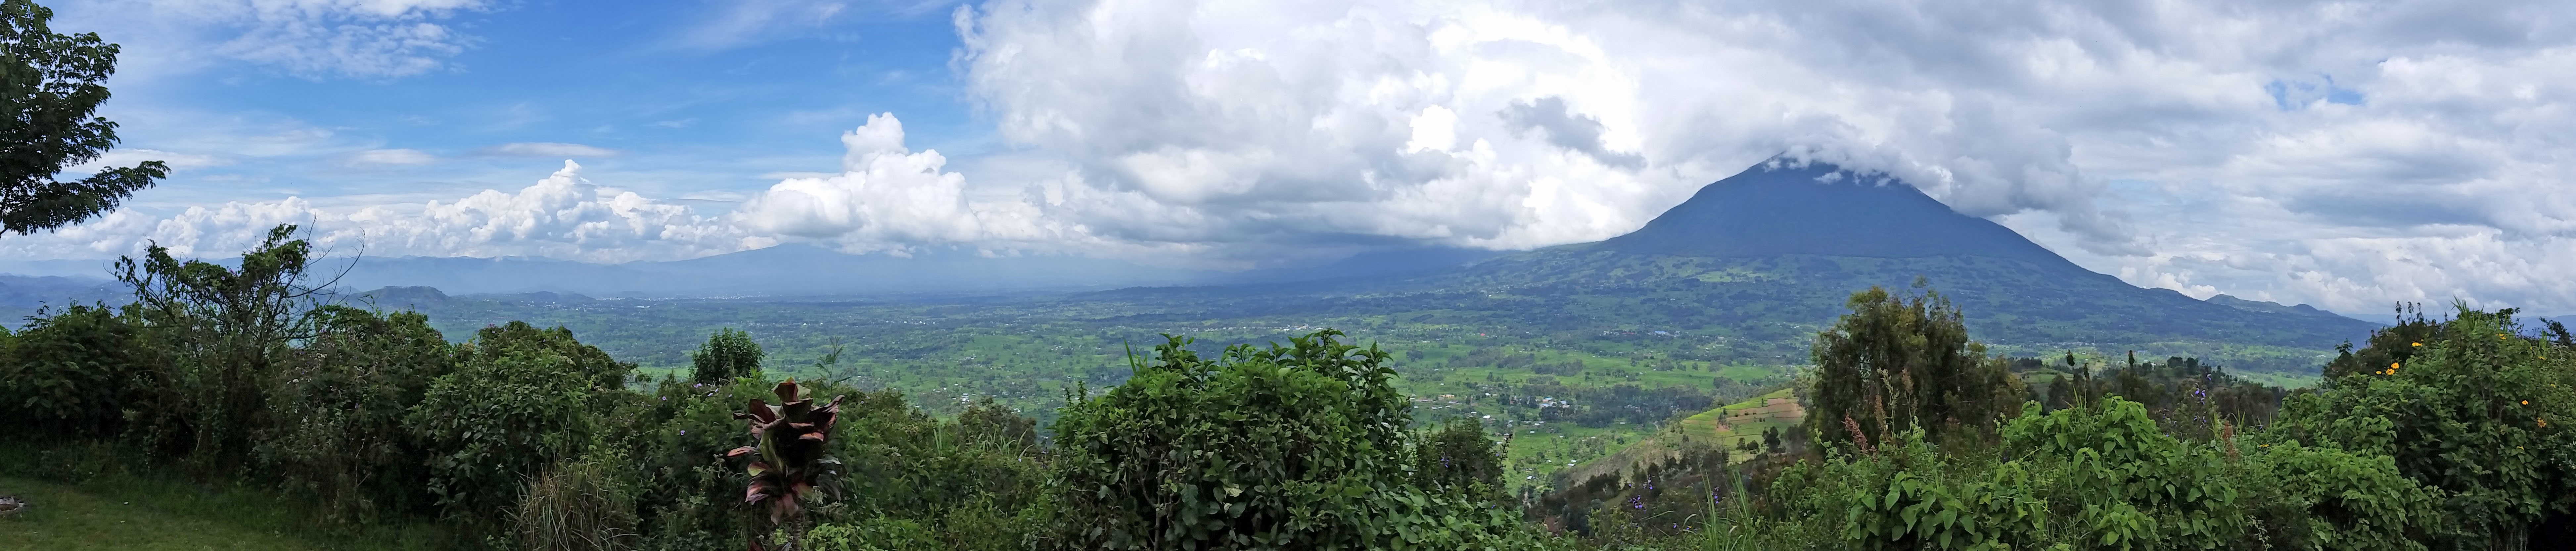 Volcanoes National Park, Rwanda | J. Goetz